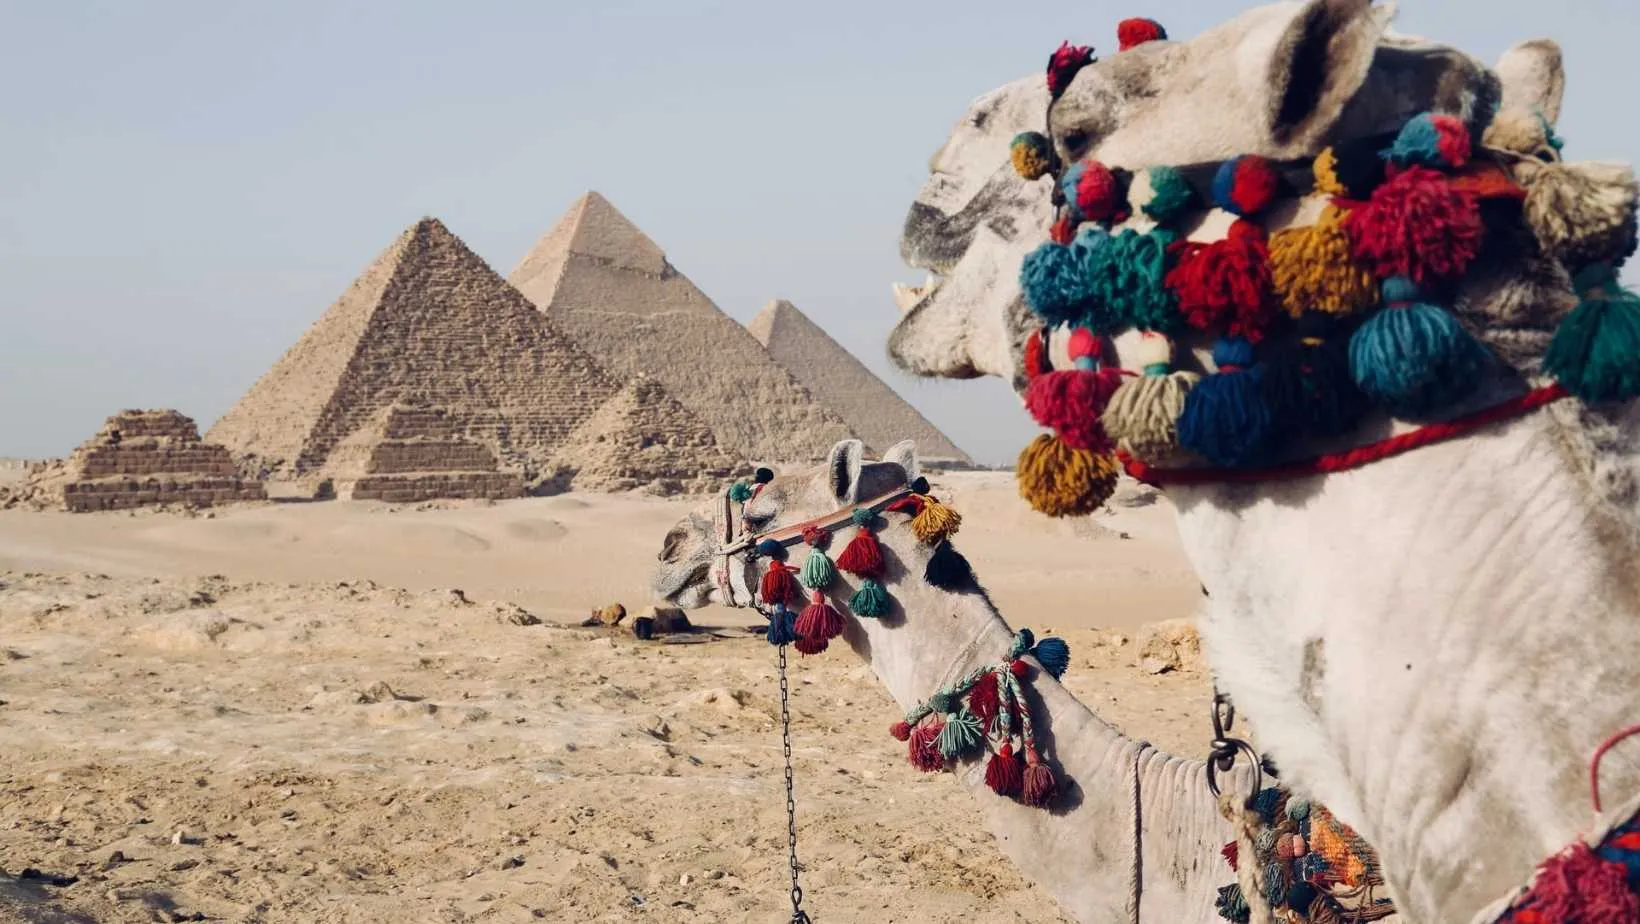 Desert Camel, camel walking on desert egypt, egypt desert, egypt pyramids